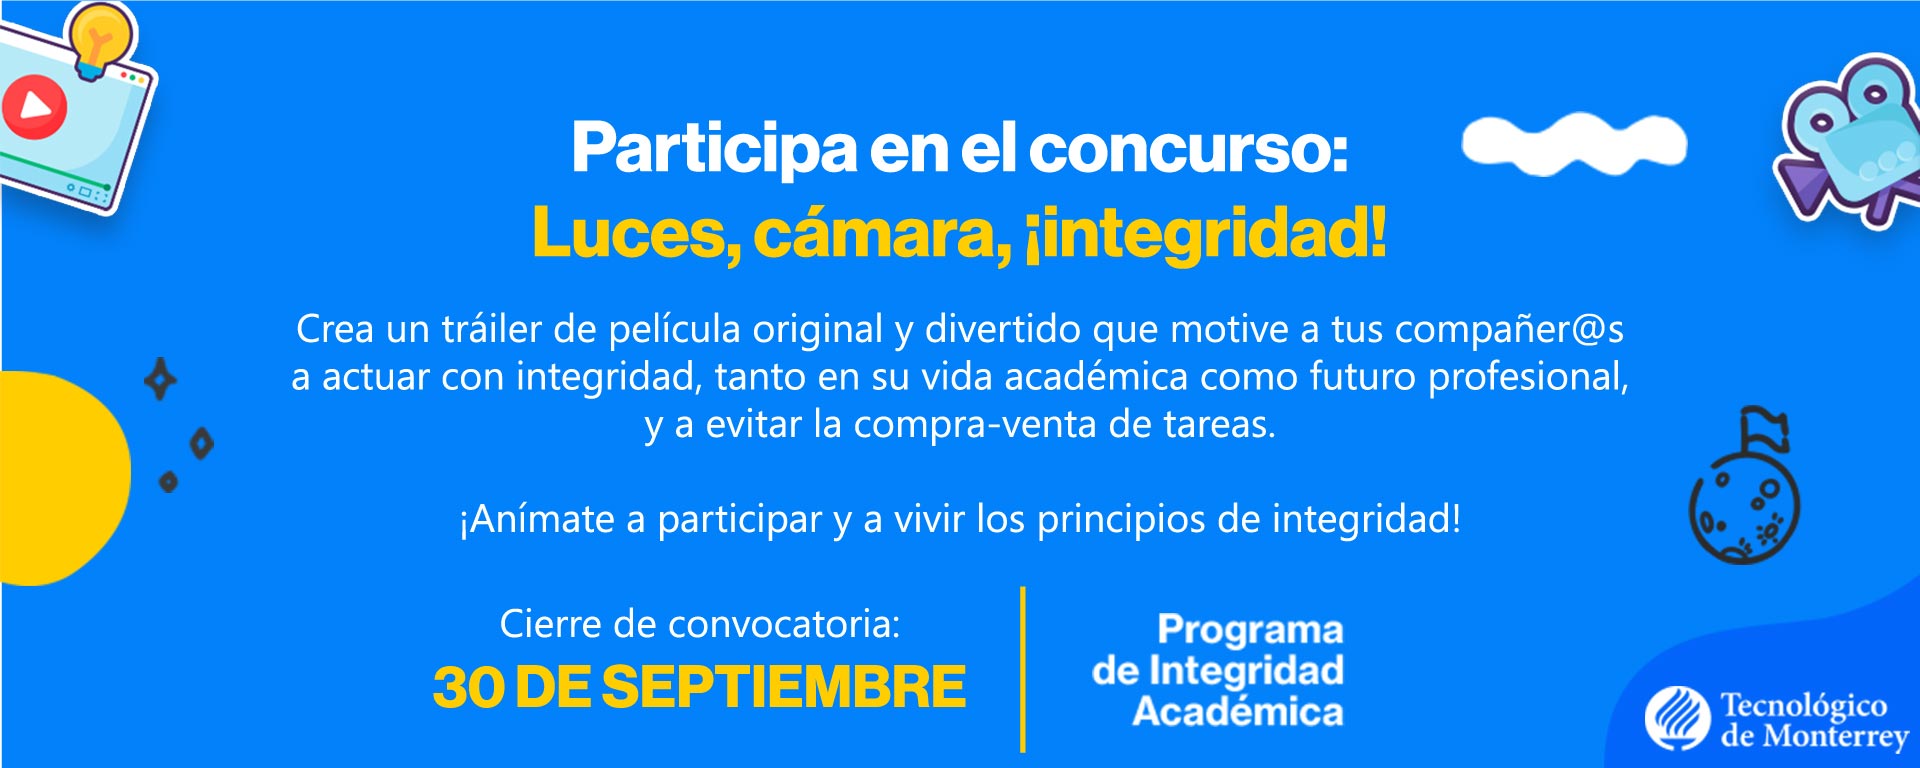 Integridad Académica | Tecnológico de Monterrey